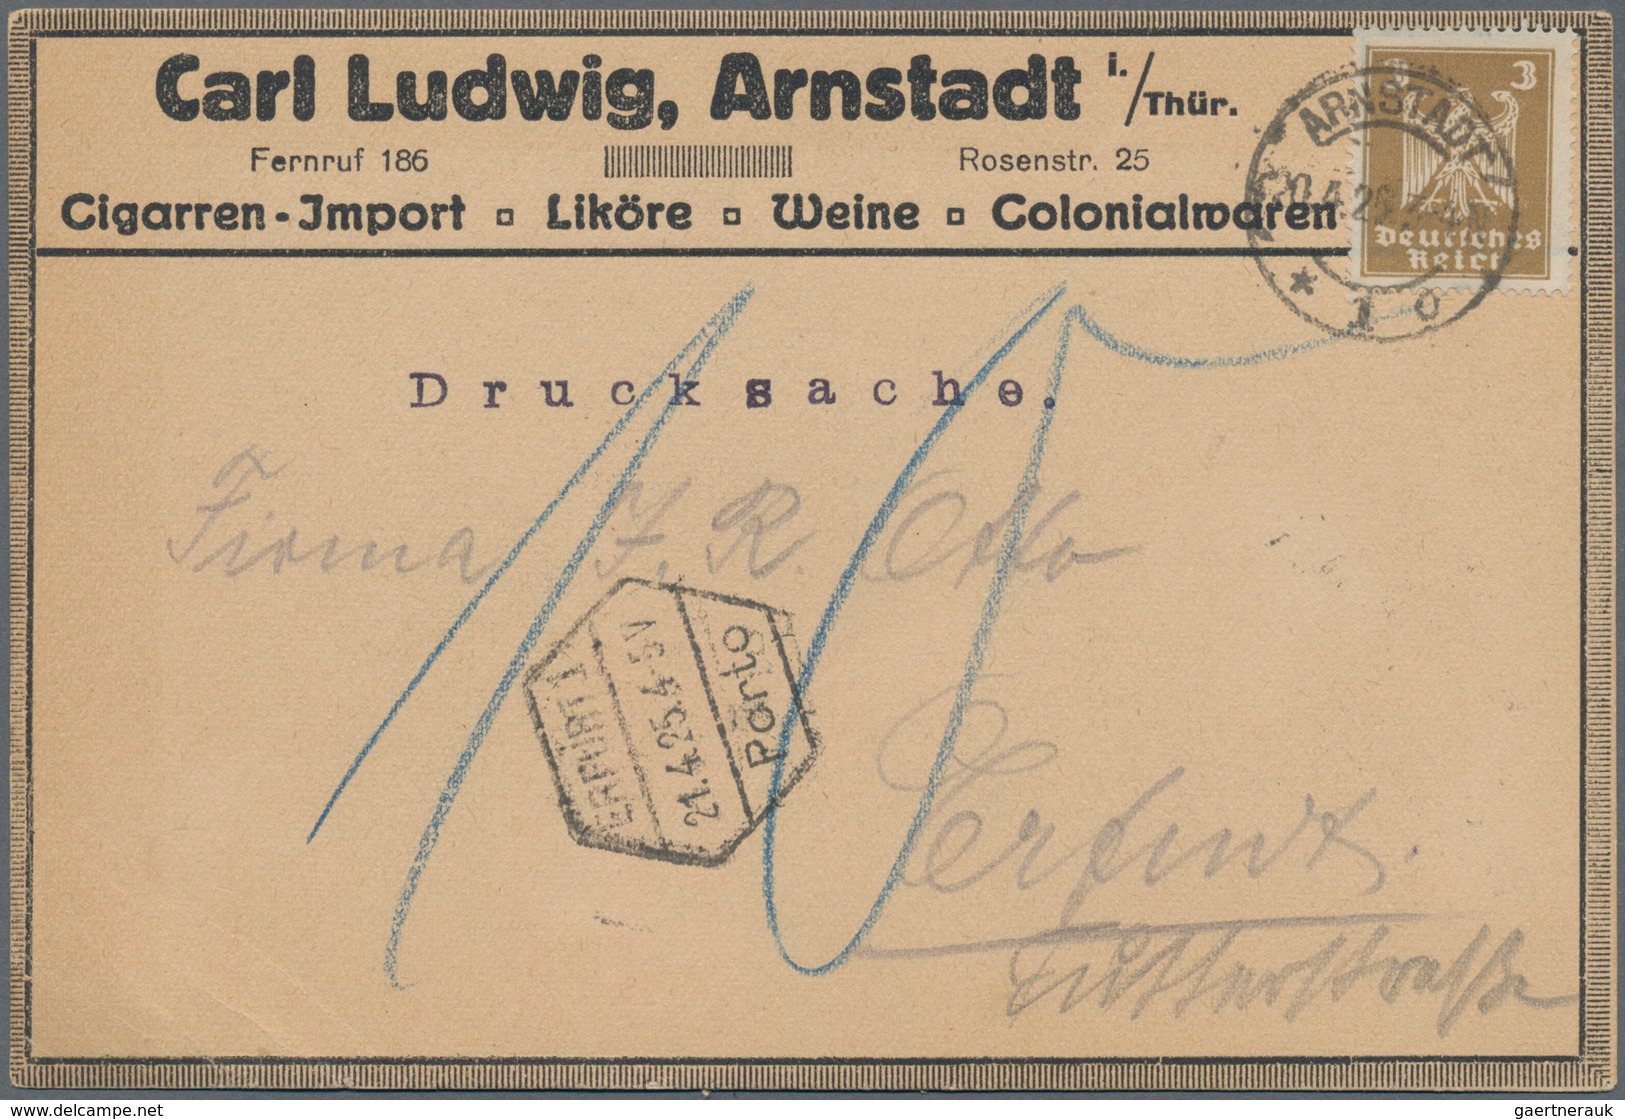 Deutsches Reich - Stempel: 1890/1944 ca., NACHPORTO, gehaltvolle Sammlung mit ca.150 Nachporto-Beleg